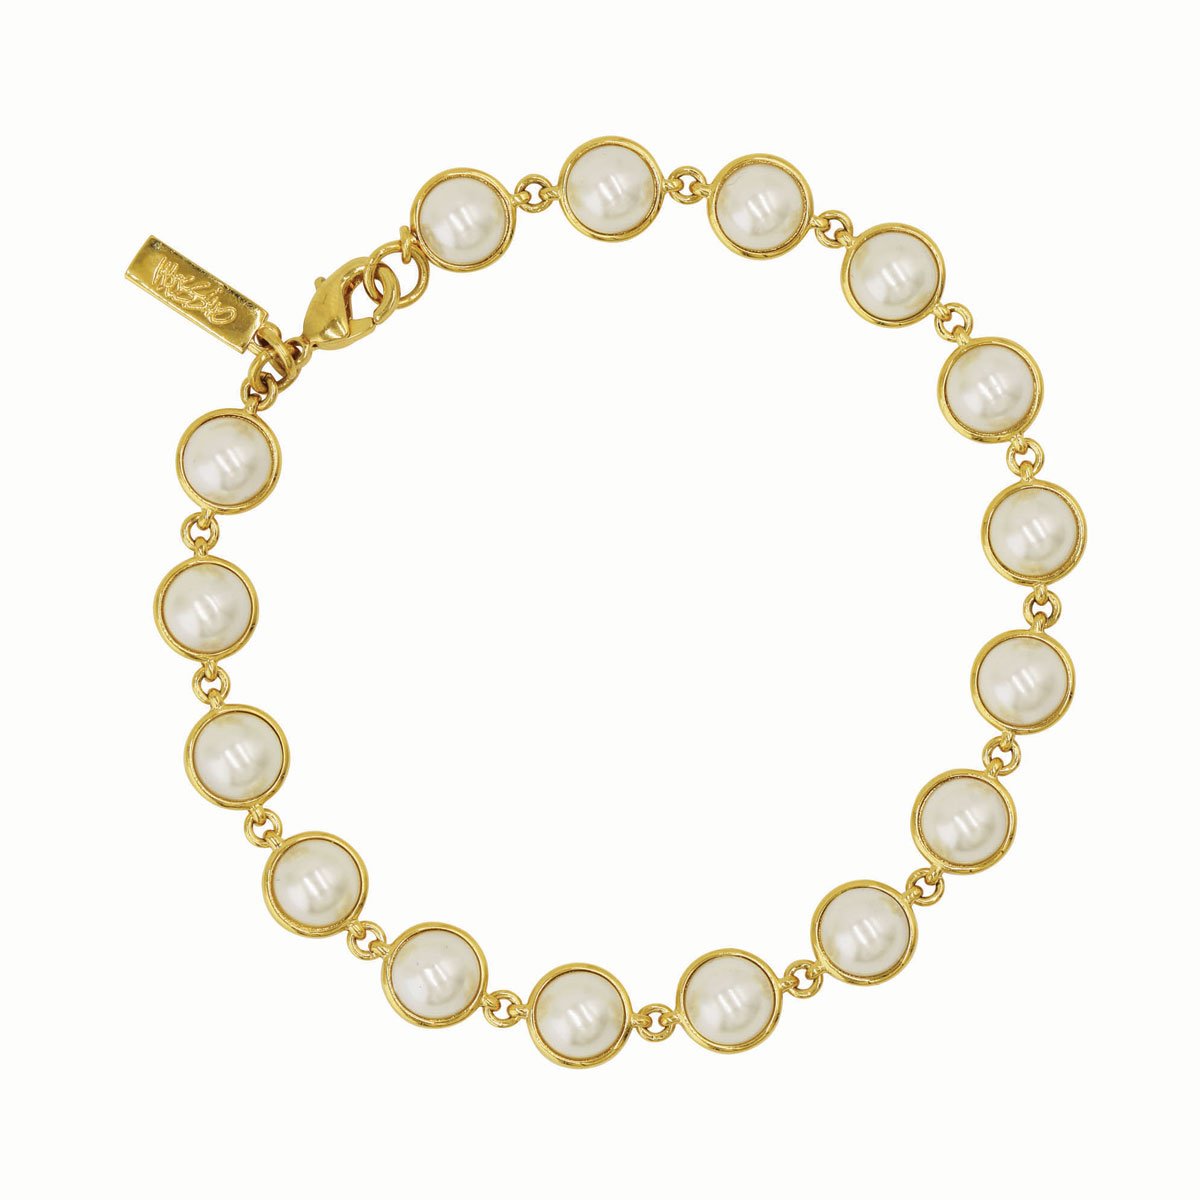 Pulsera Perlas de Cristal Blancas Y Placa Distintiva de Marca Mossimo